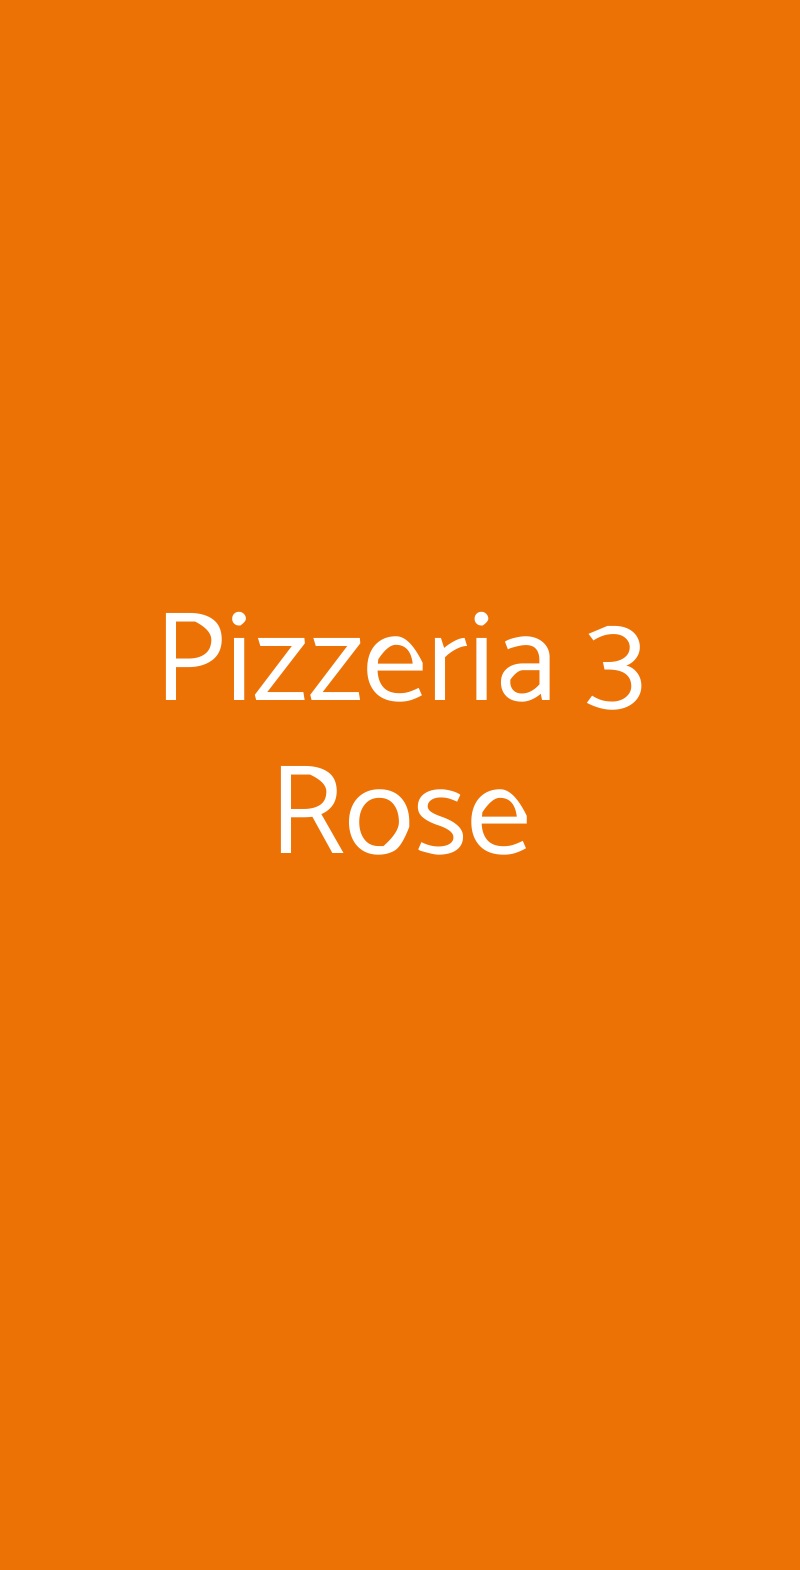 Pizzeria 3 Rose Bologna menù 1 pagina